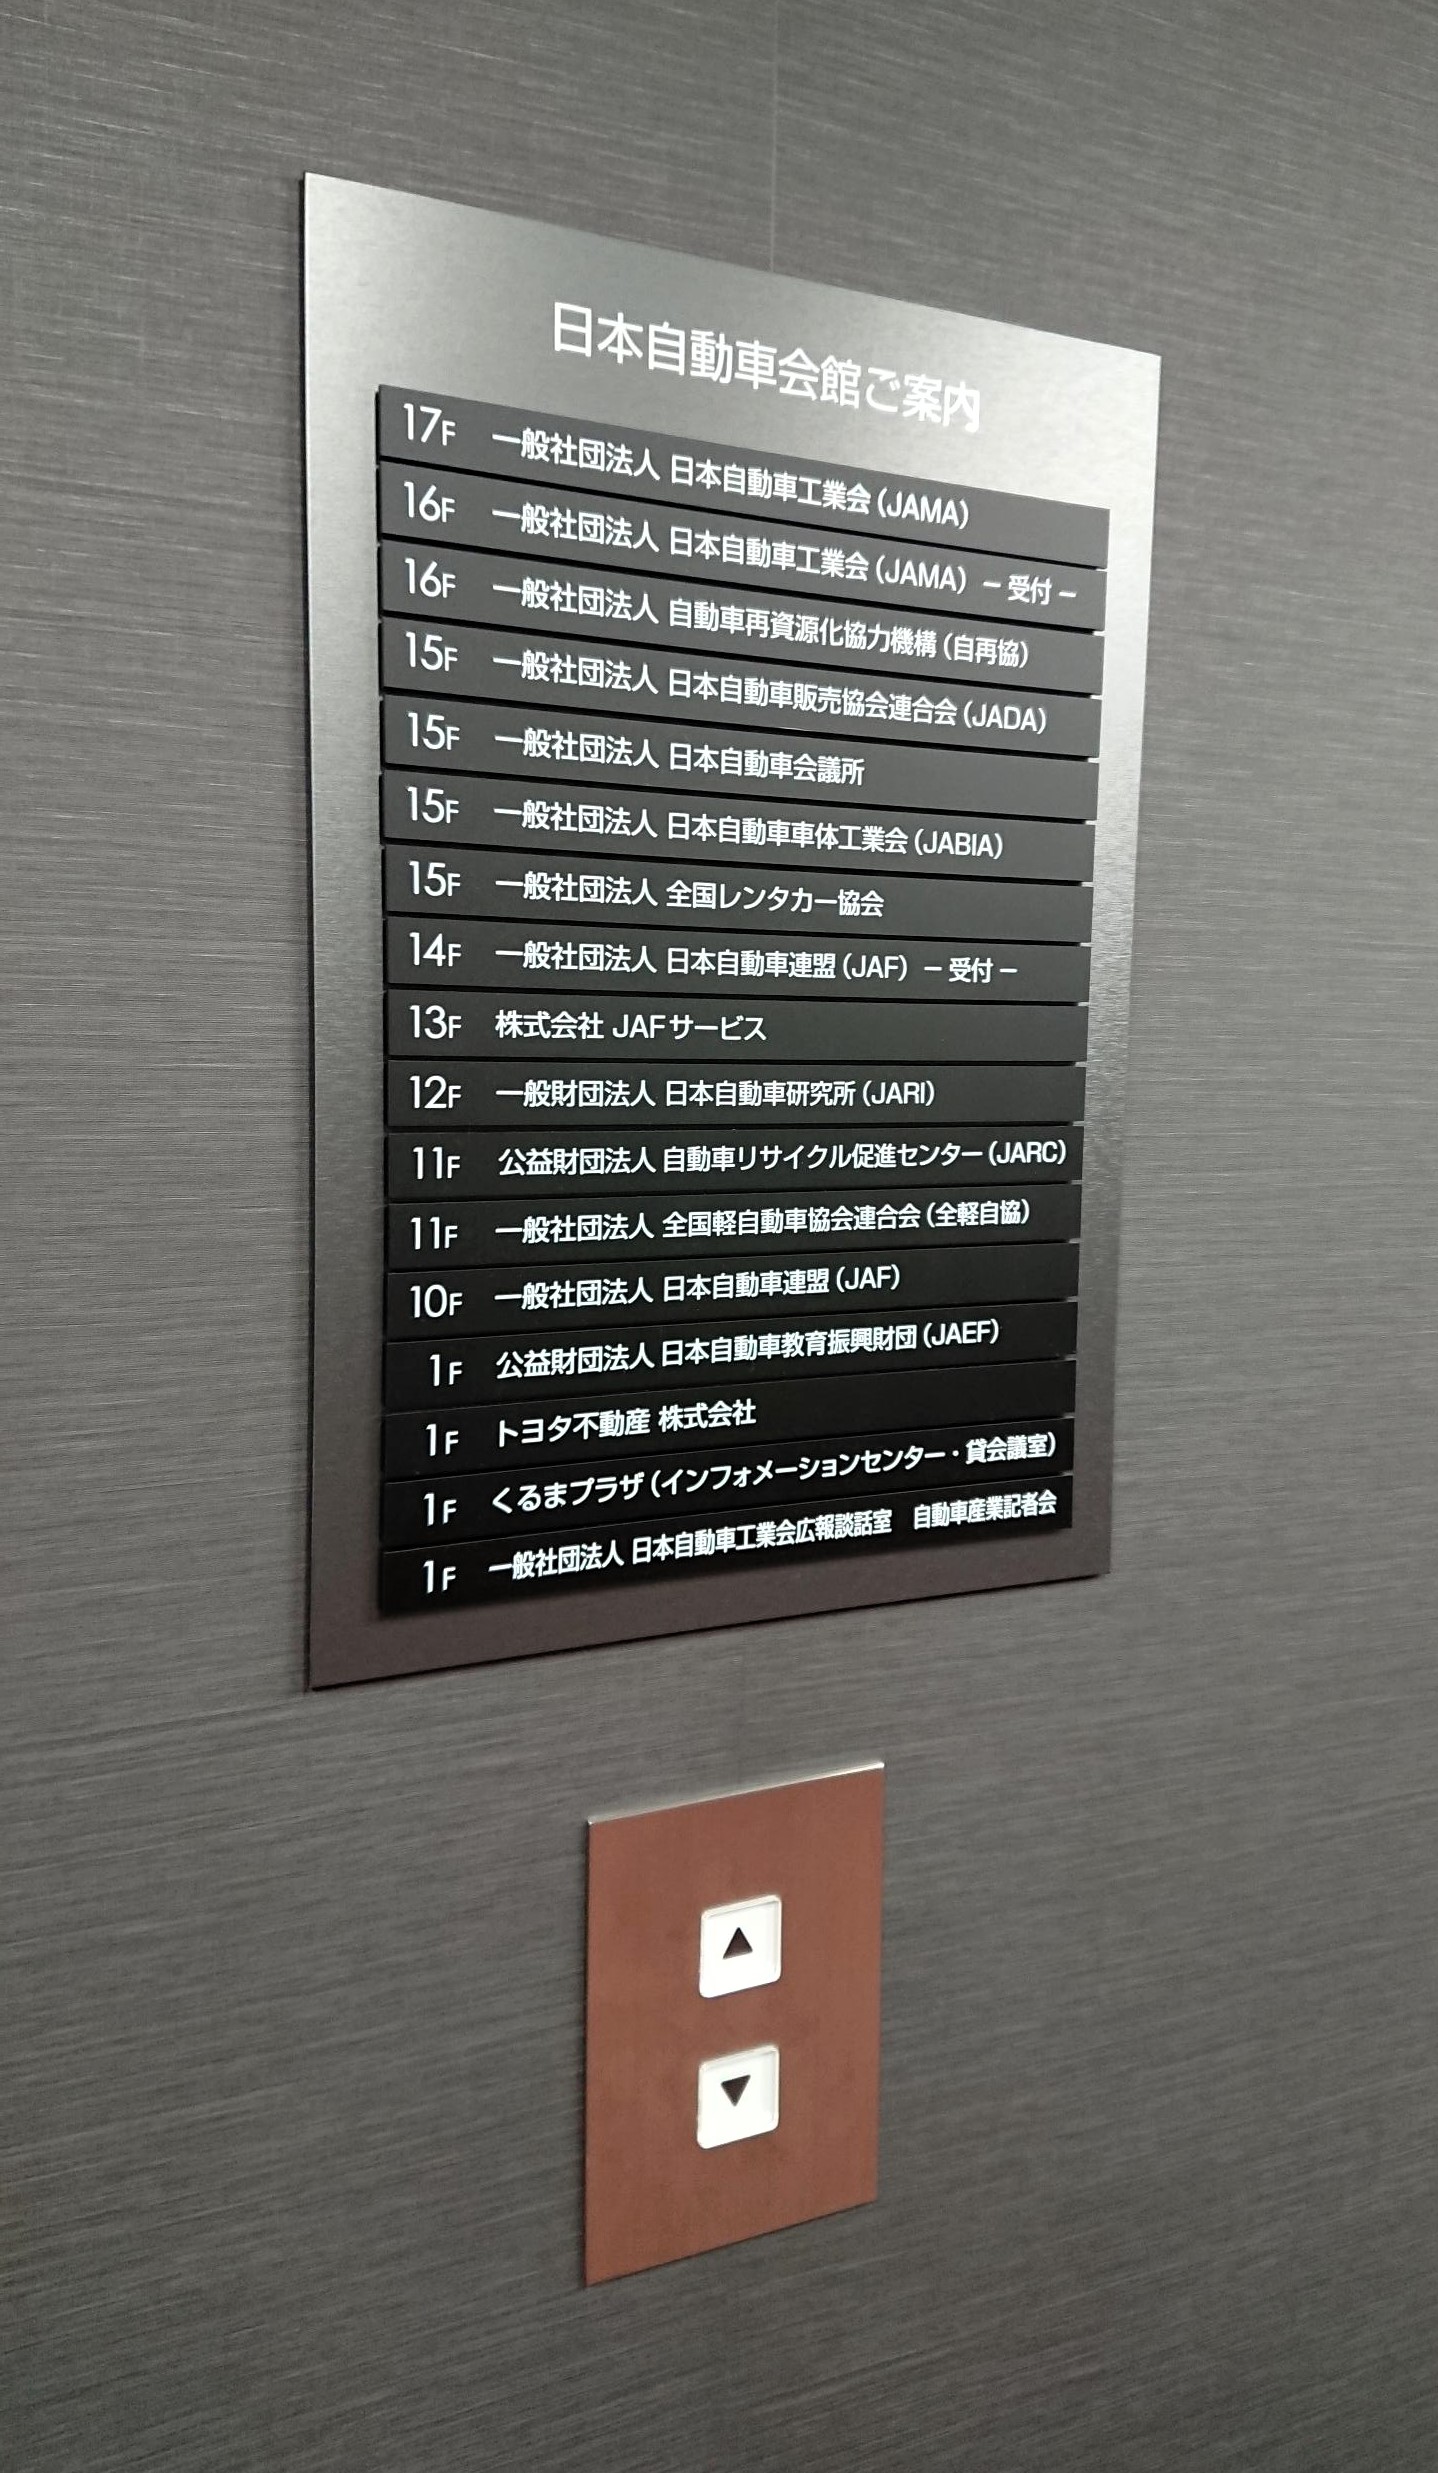 日本自動車会館エレベーターホールに業界団体「案内板」新設